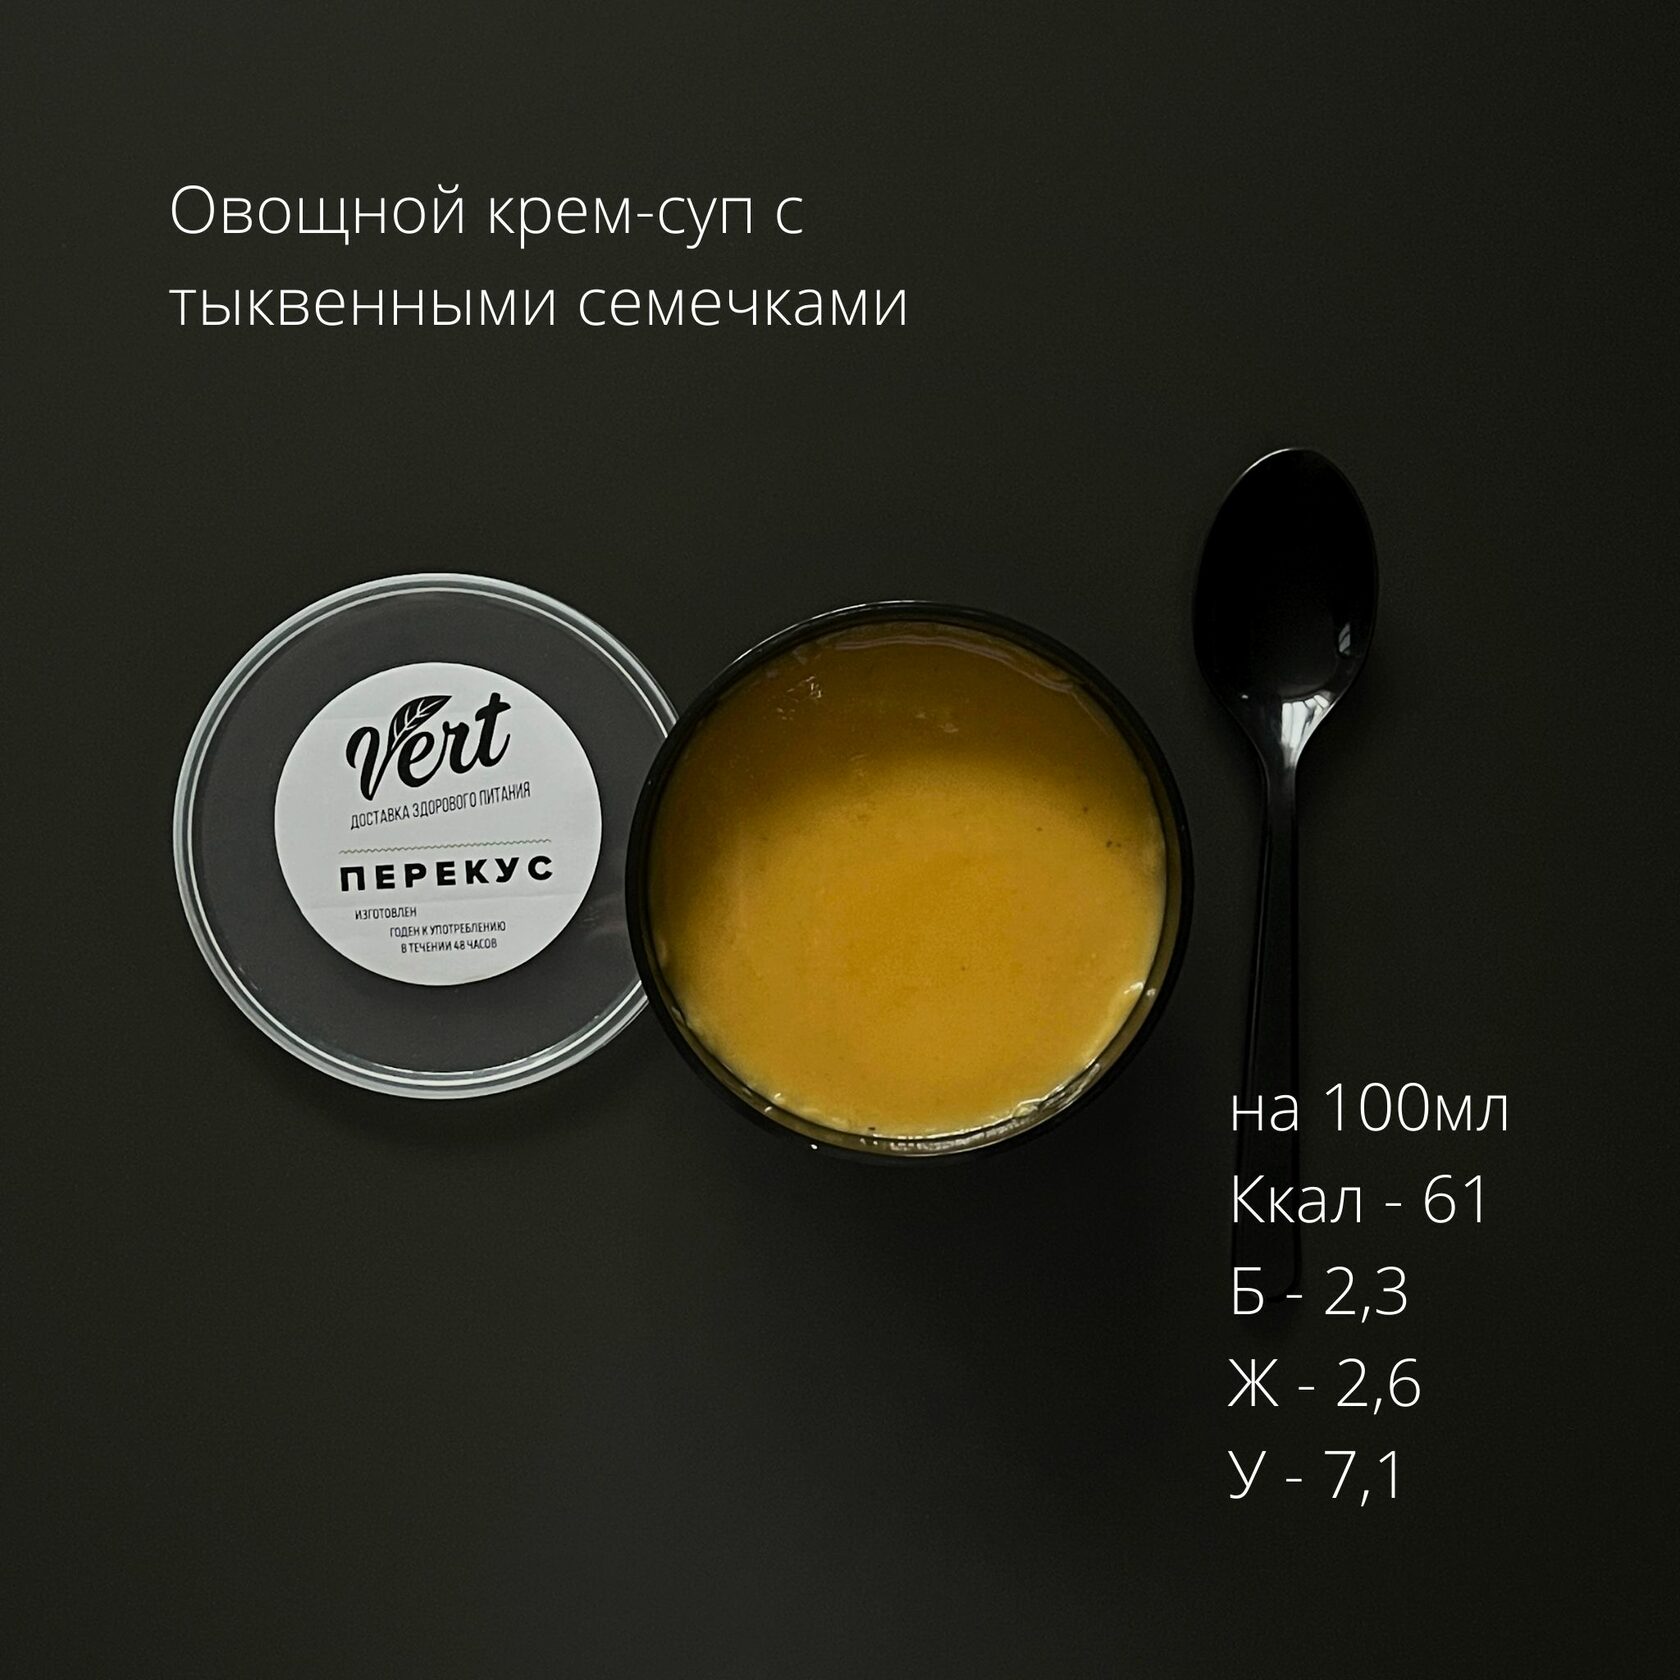 Астория фуд. Vert food Kulibina про-мис, ООО.